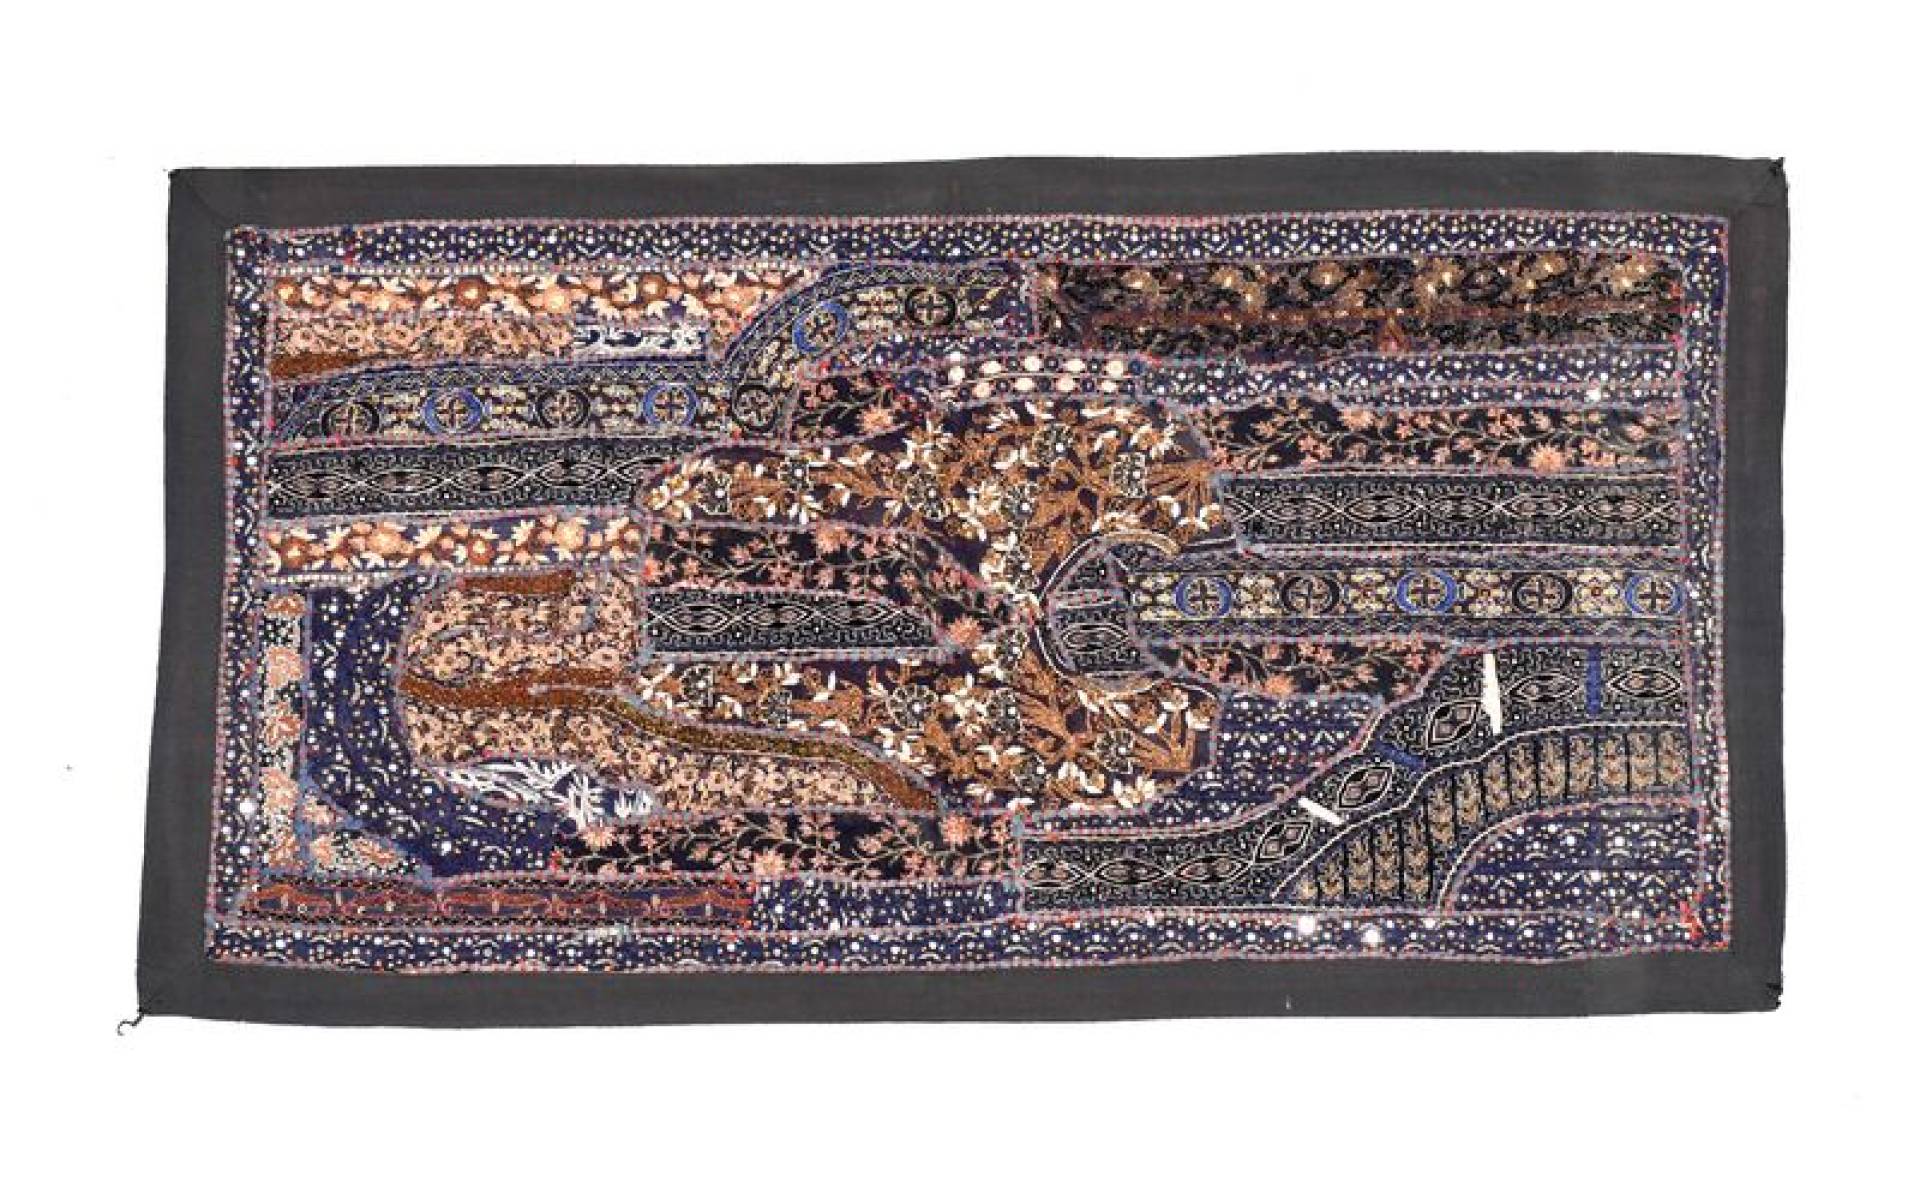 Patchworková tapiséria z Rajastanu, ručné práce, 80x45 cm